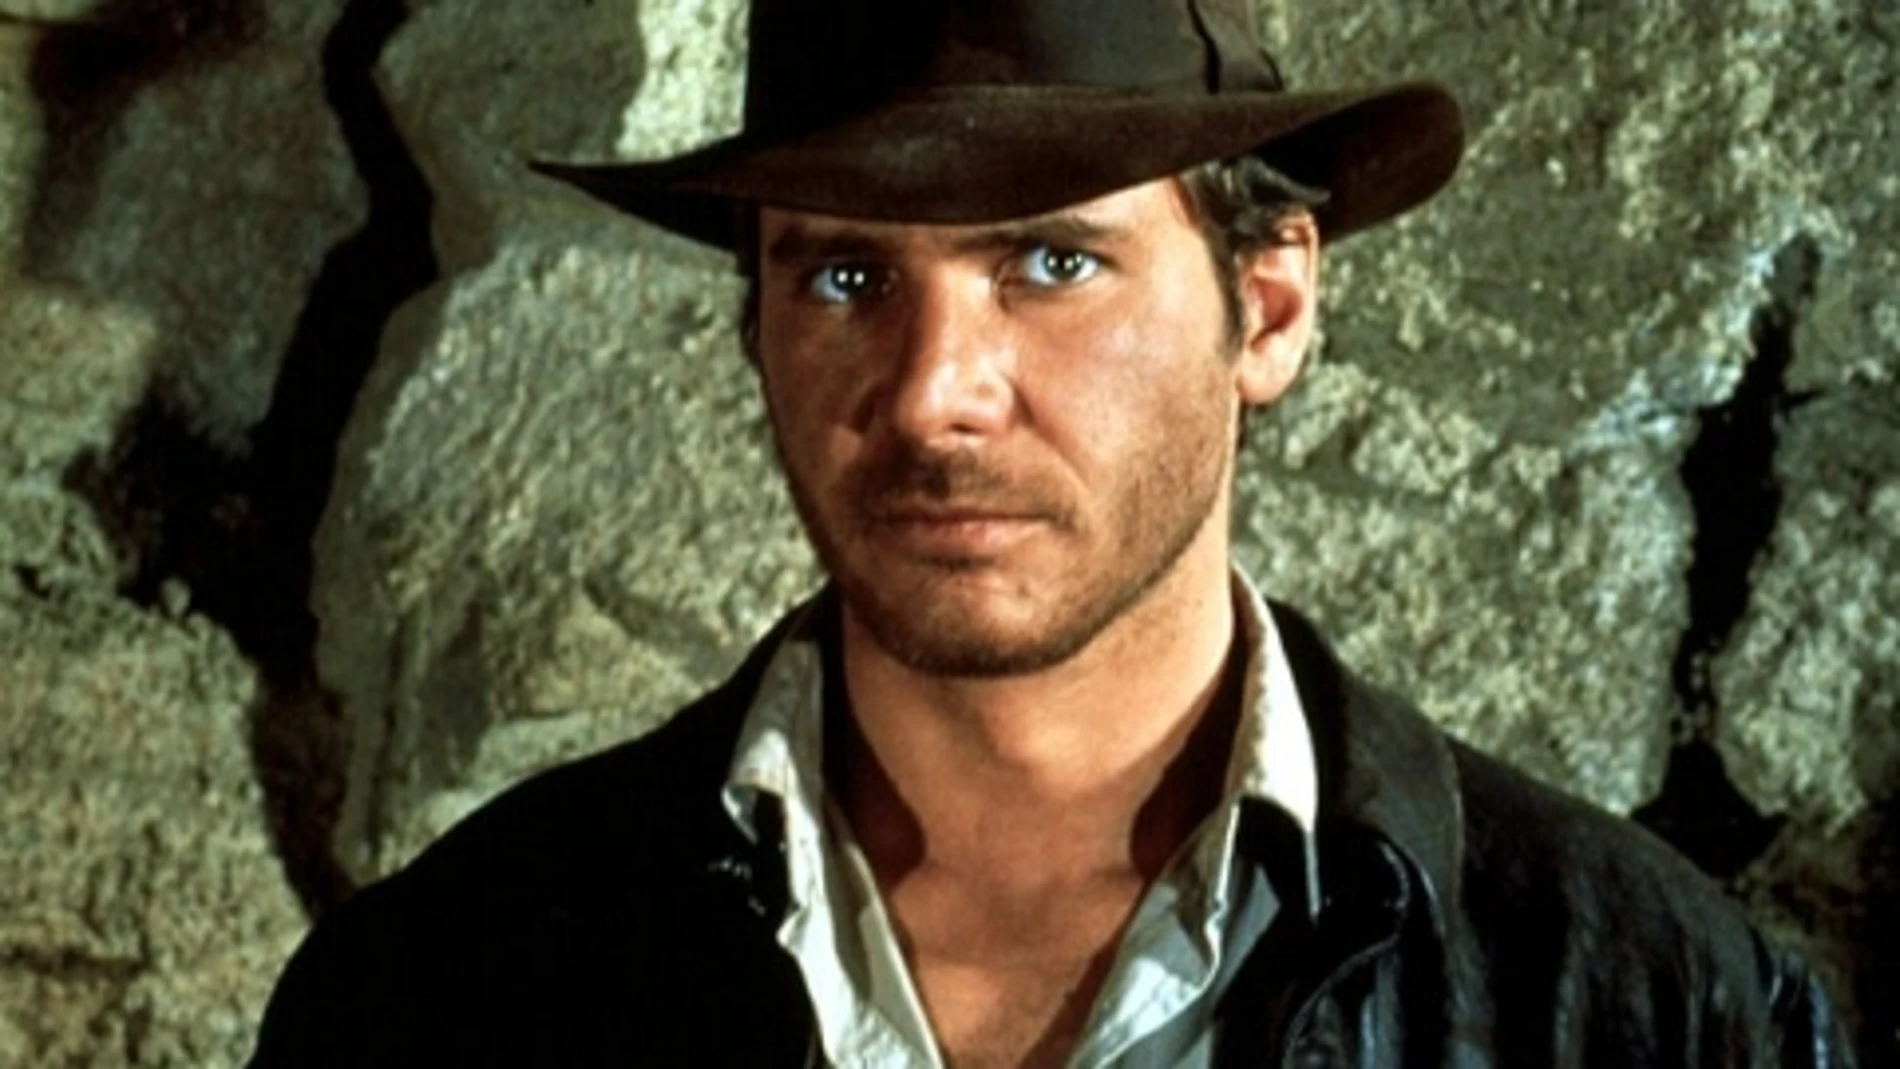 Indiana Jones cuelga el látigo